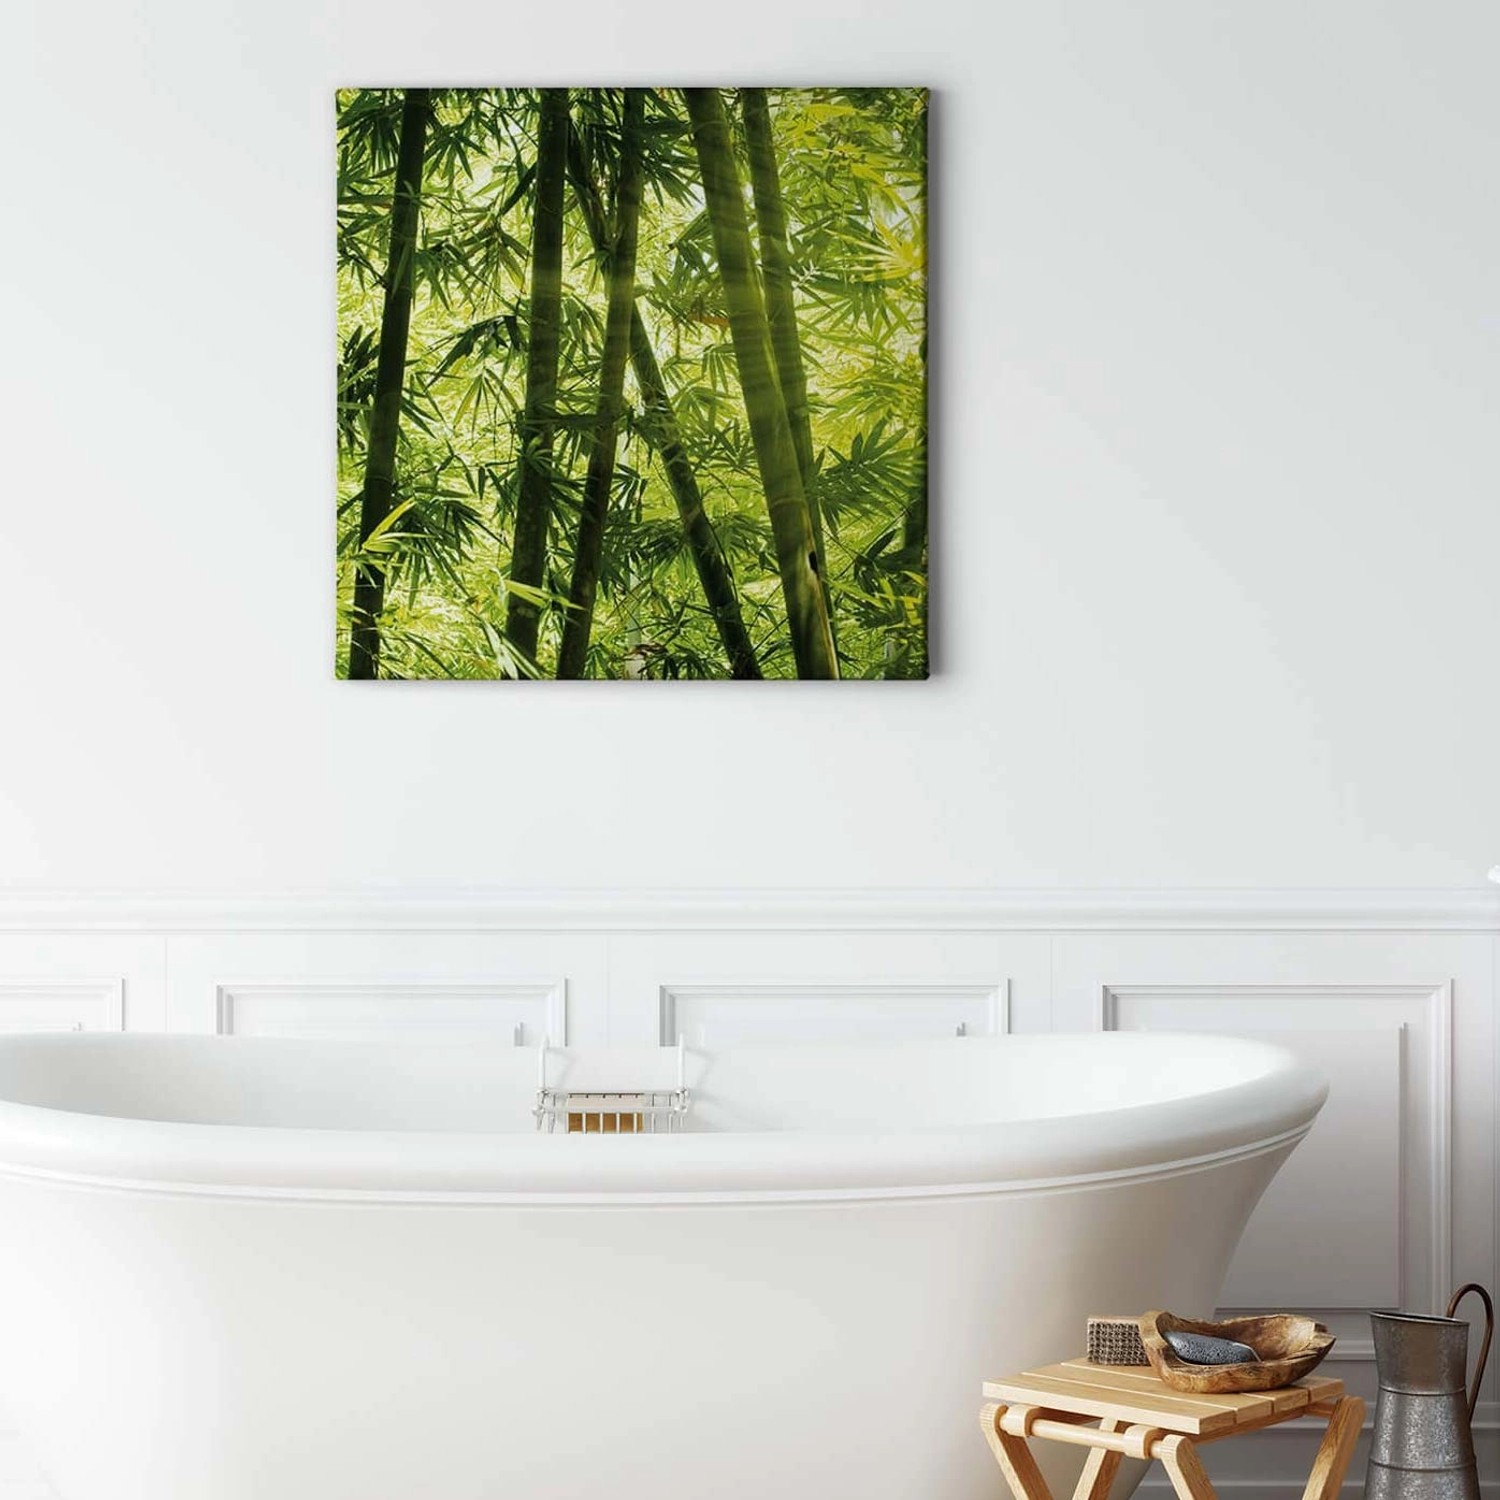 Bricoflor Bambus Bild Im Asiatischen Stil Wellness Leinwand Bild Mit Zen Motiv Für Schlafzimmer Und Badezimmer Grünes Le